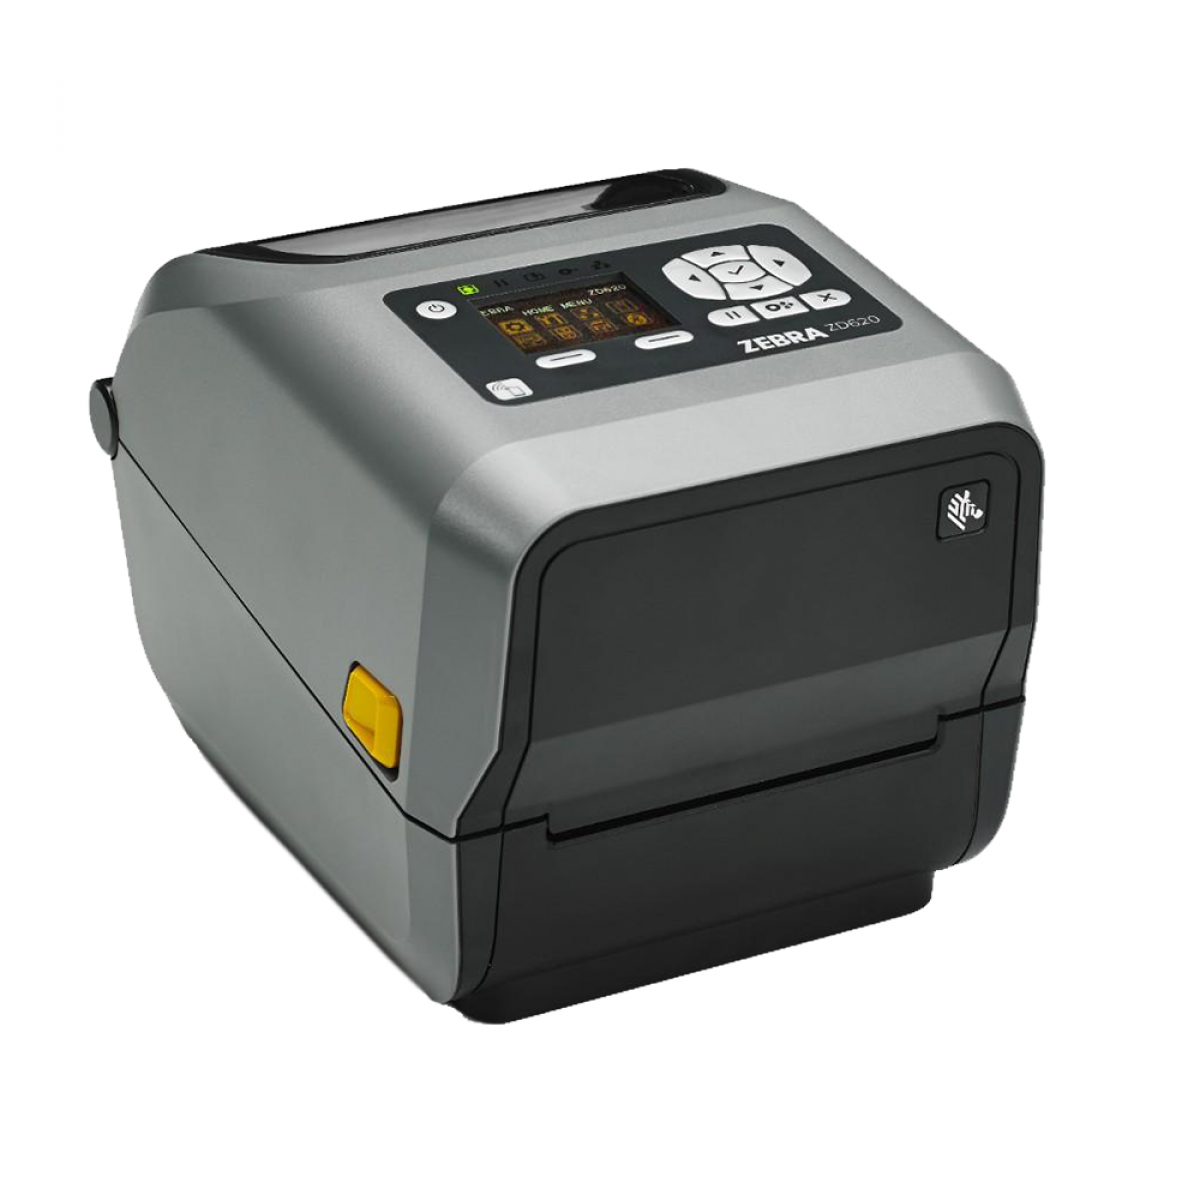 Zebra ZD620 printer - tap & pair mobile devices